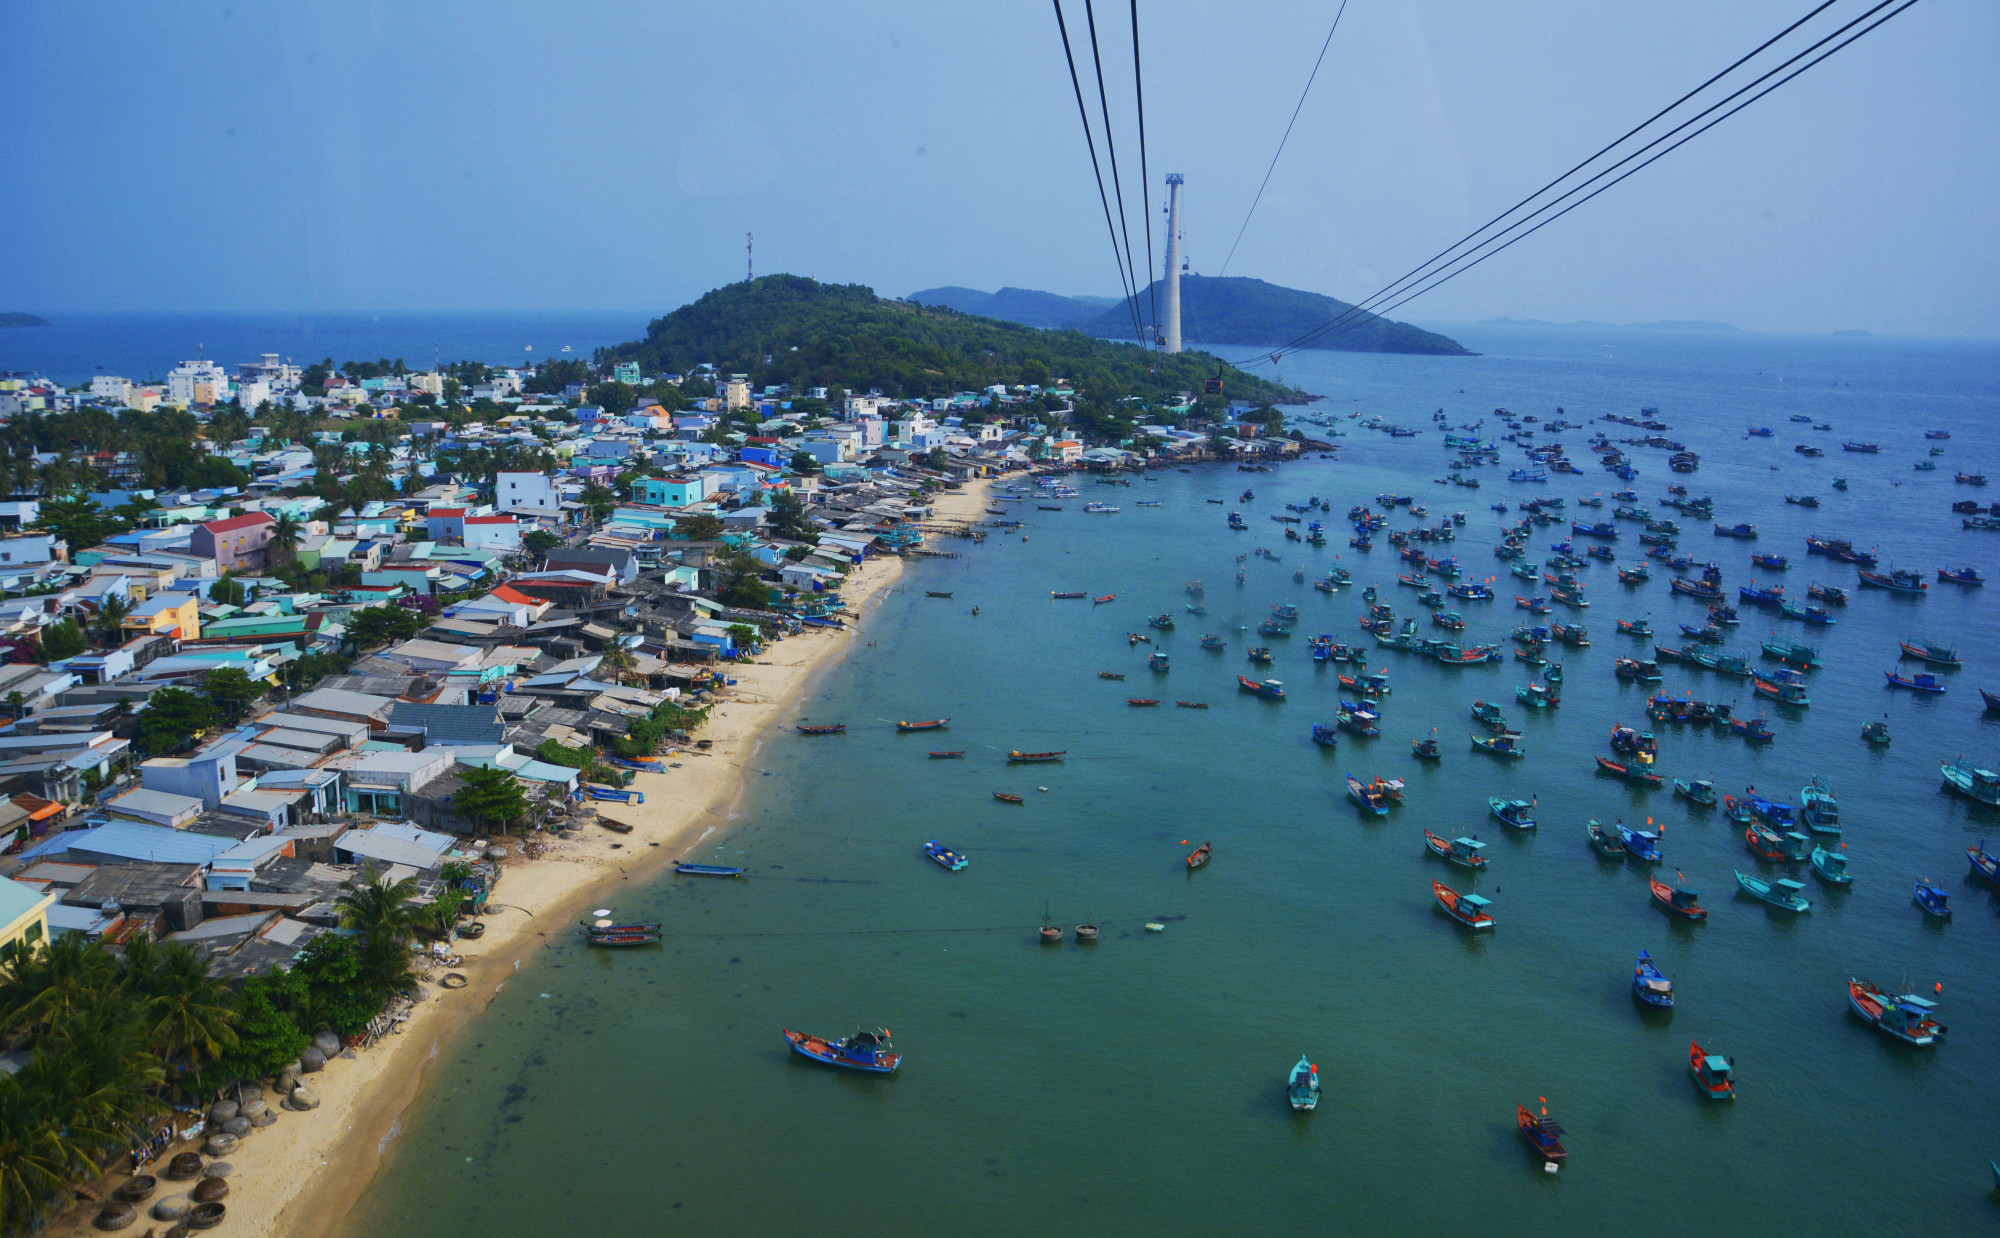 Phú Quốc - thành phố du lịch biển đảo đầu tiên của Việt Nam - đã sẵn sàng đón khách du lịch trong và ngoài nước